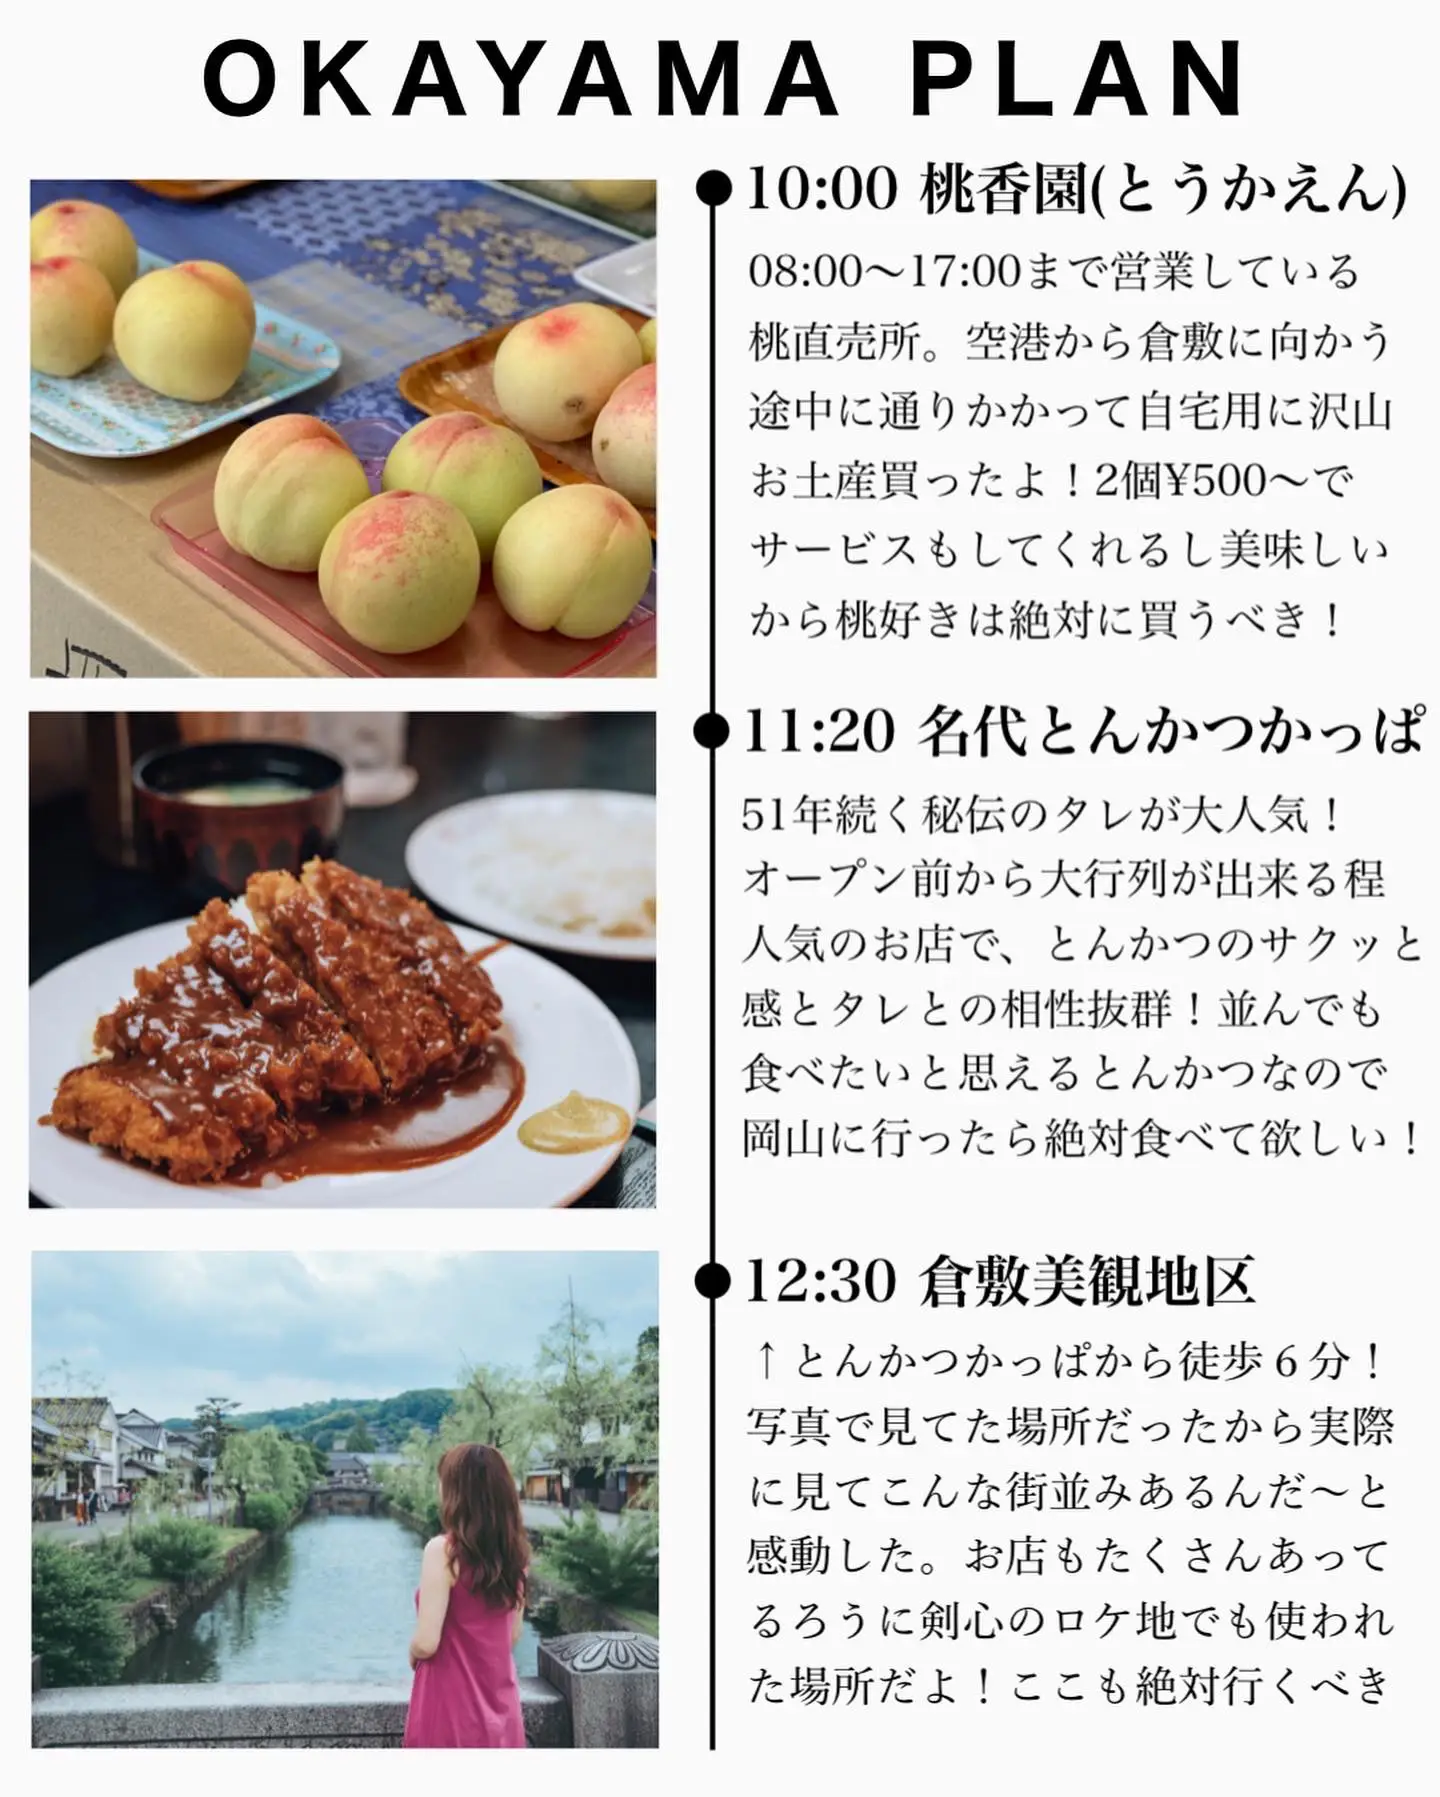 岡山旅行プラン✈️保存推奨の画像 (2枚目)